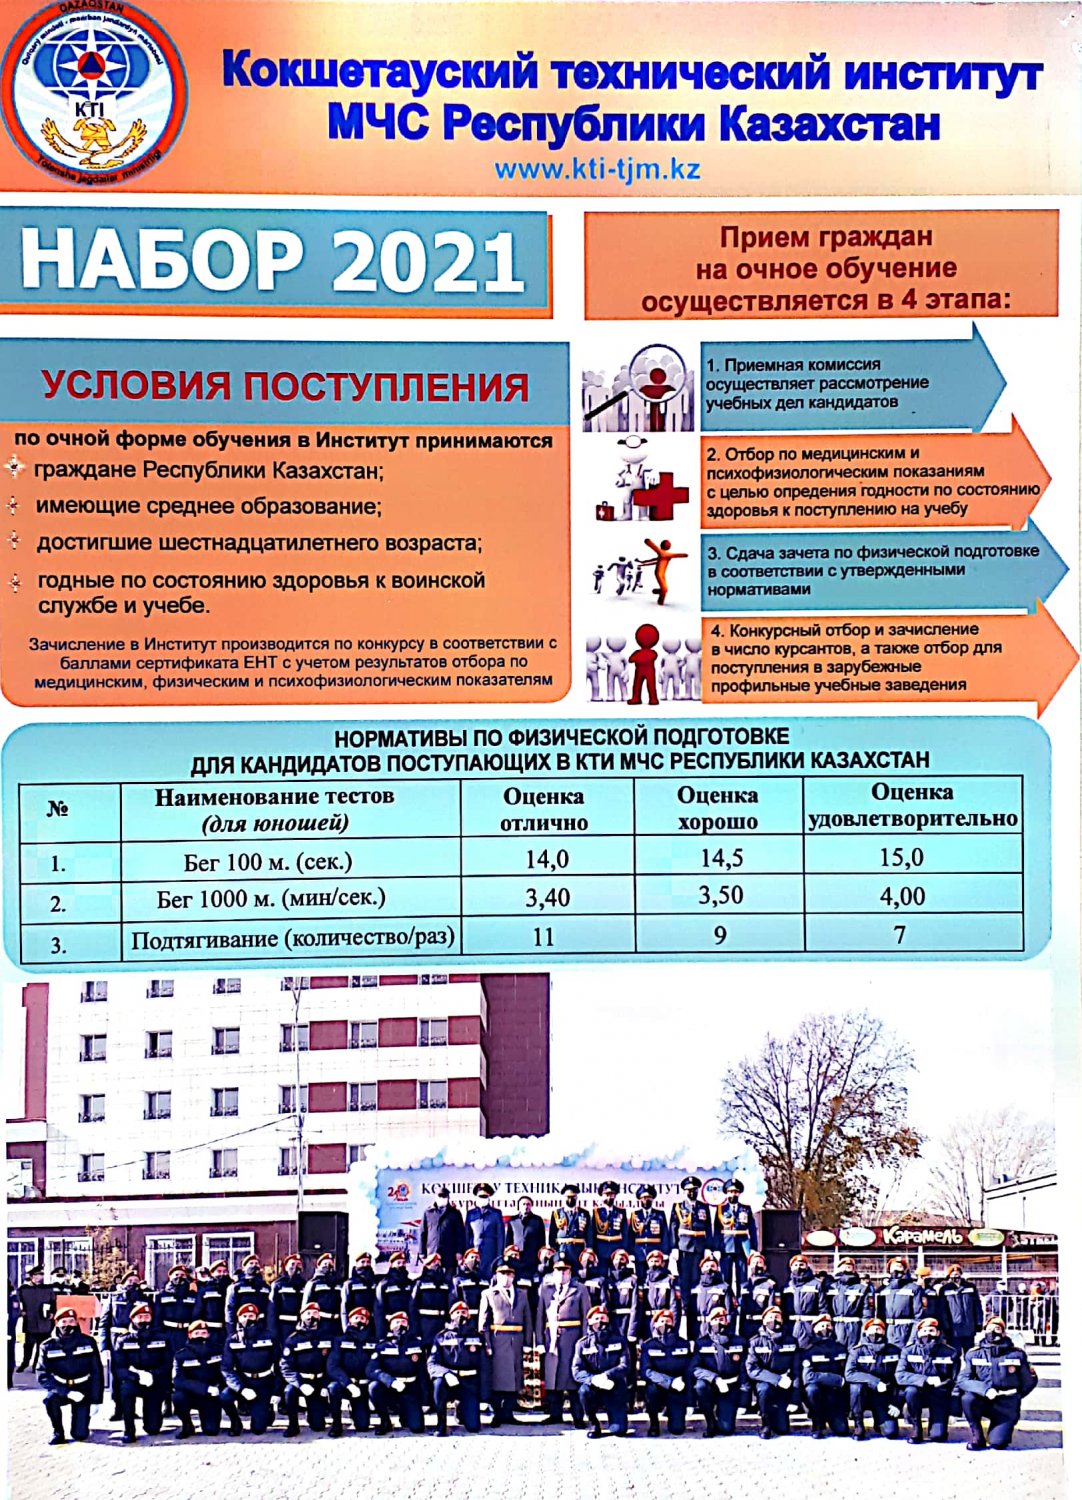 Кокшетауский технический институт МЧС Республики Казахстан